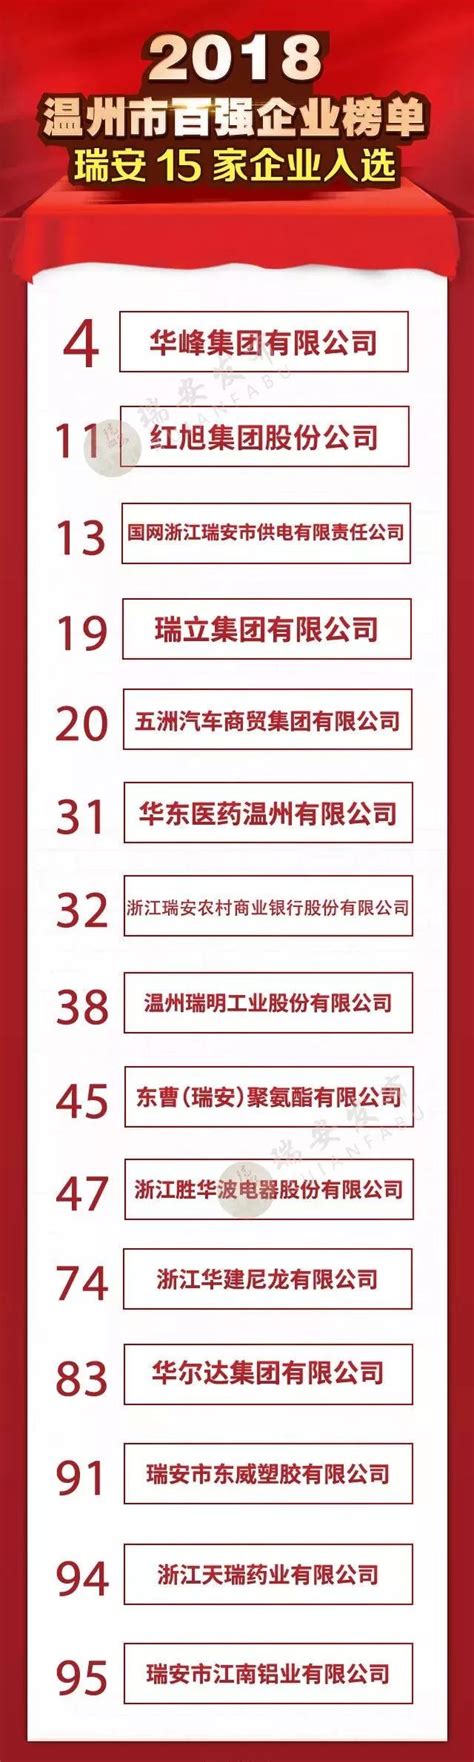 2015 500强企业名单 中国106家企业上榜（附名单）_房产资讯-重庆房天下